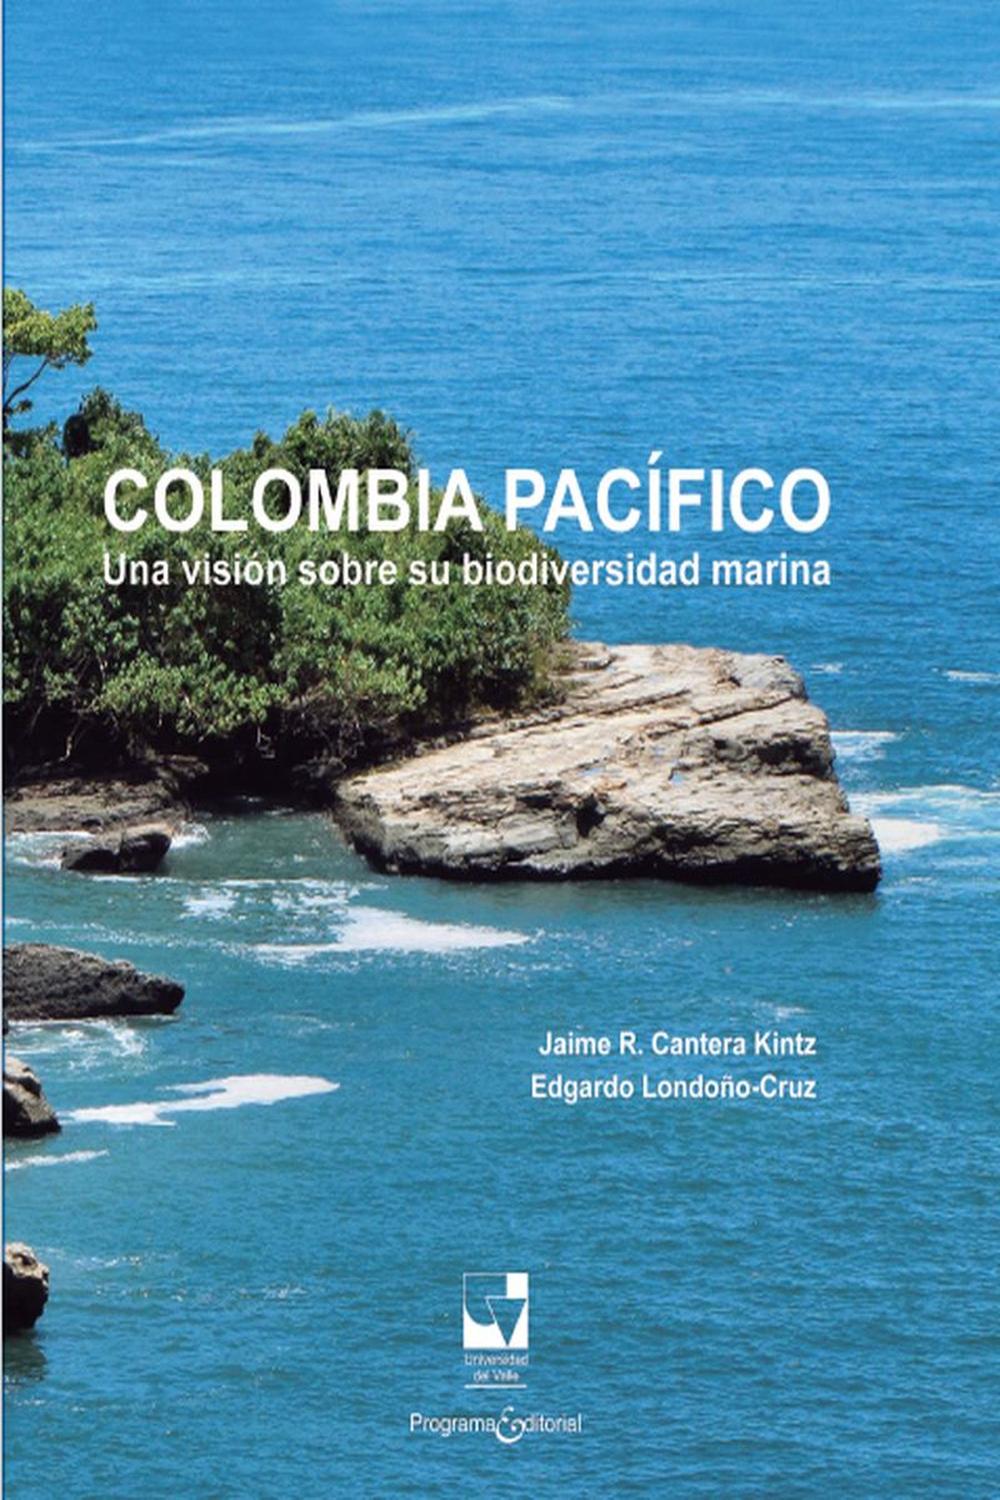 Colombia Pacífico - Jaime Ricardo Cantera Kintz, Edgardo Londoño-Cruz